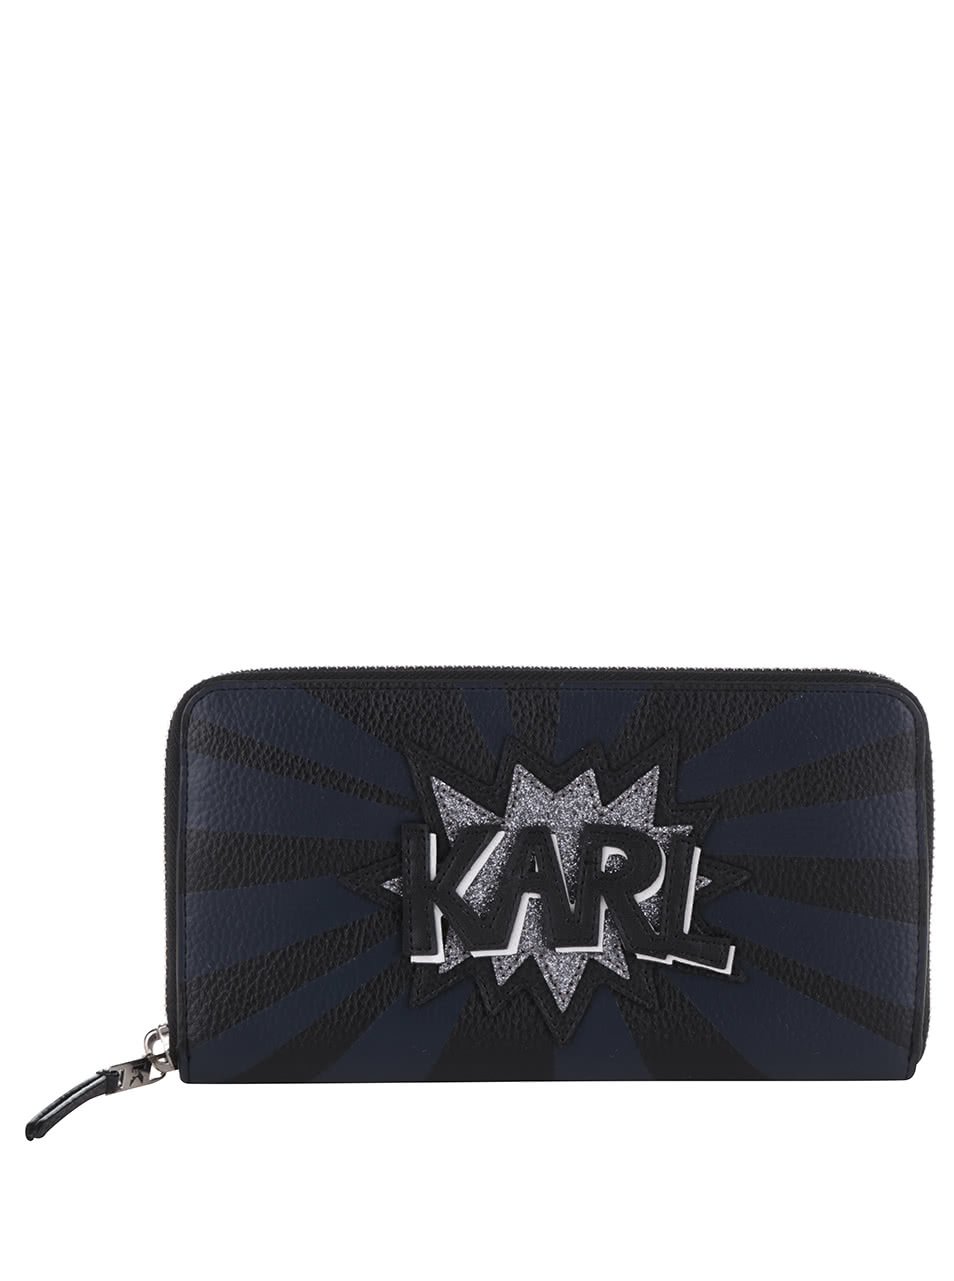 Modro-černá peněženka na zip s nápisem KARL LAGERFELD